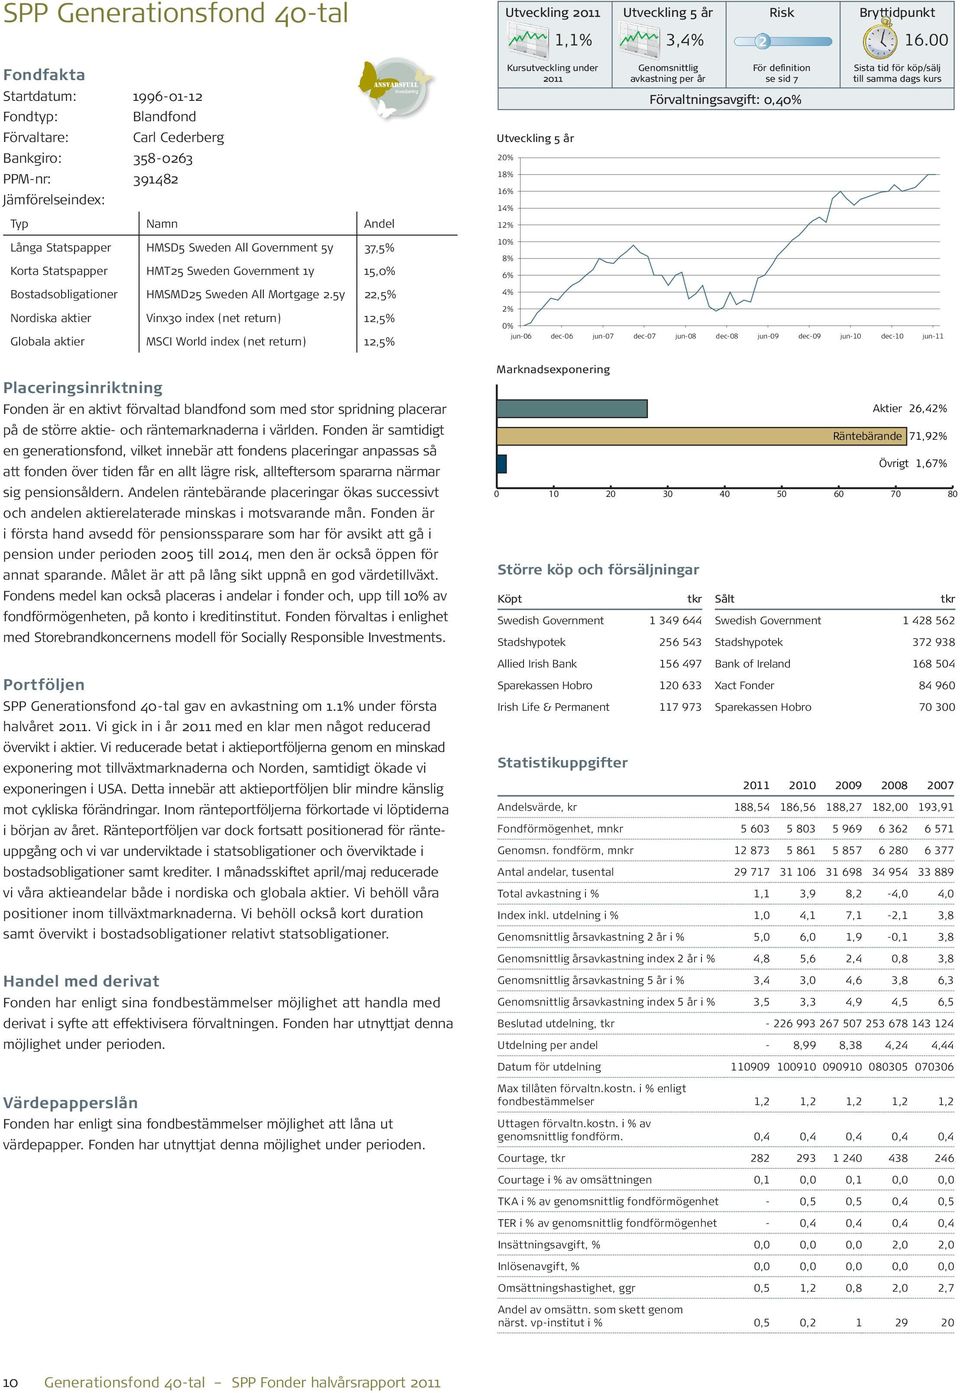 5y 22,5% Nordiska aktier Vinx30 index (net return) 12,5% Globala aktier MSCI World index (net return) 12,5% Placeringsinriktning Fonden är en aktivt förvaltad blandfond som med stor spridning